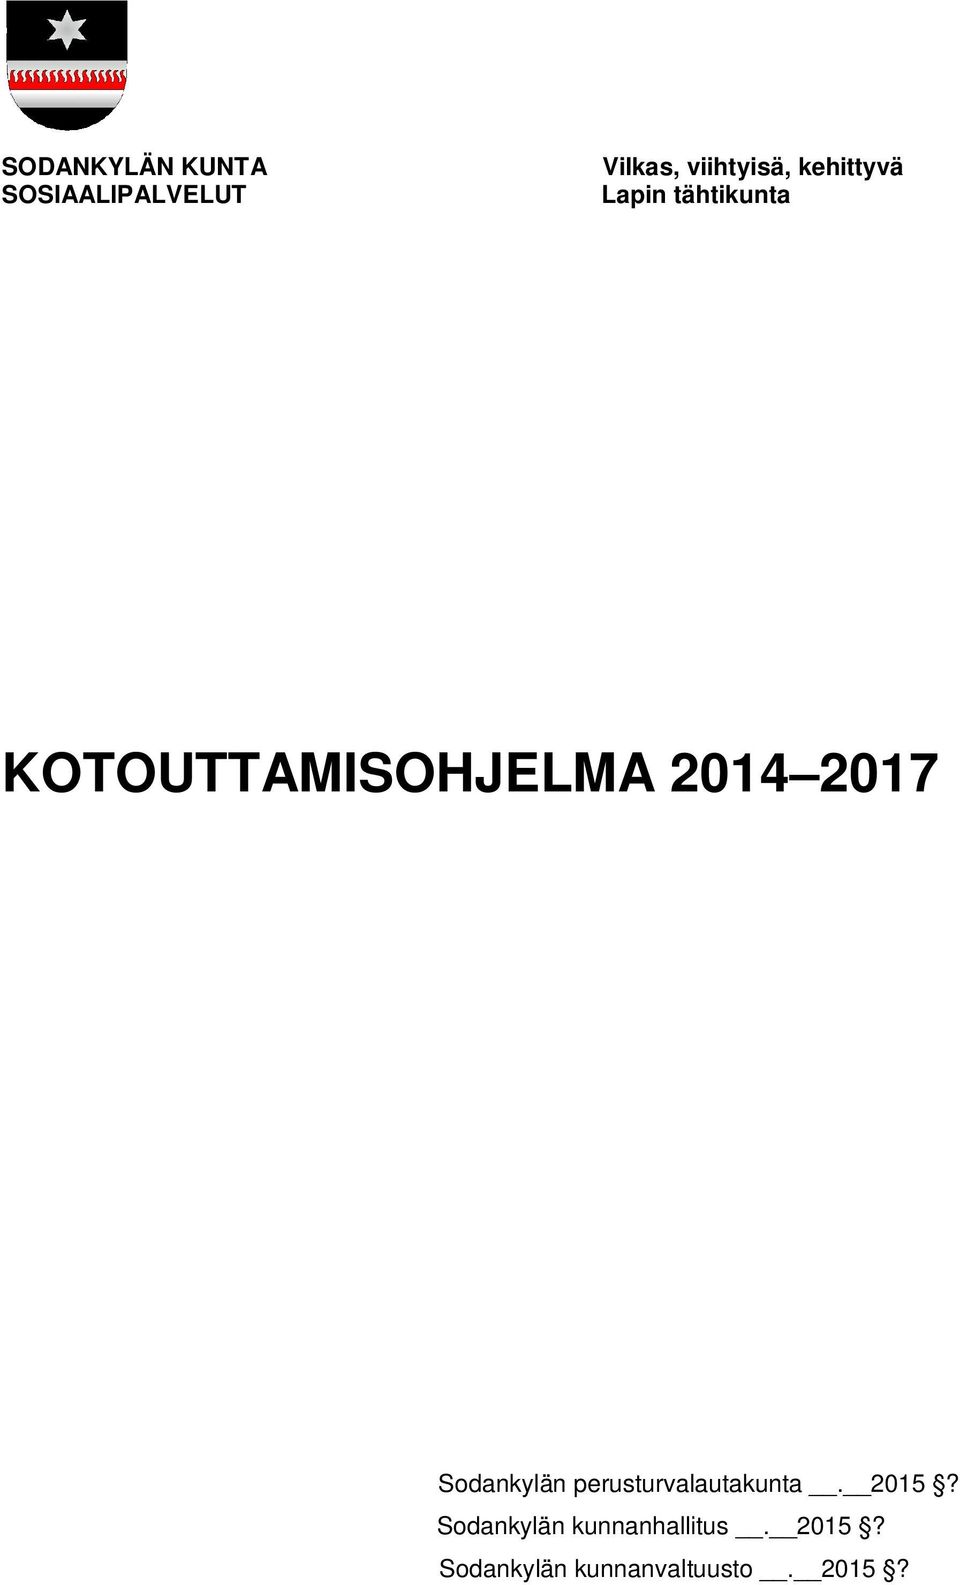 2017 Sodankylän perusturvalautakunta. 2015?